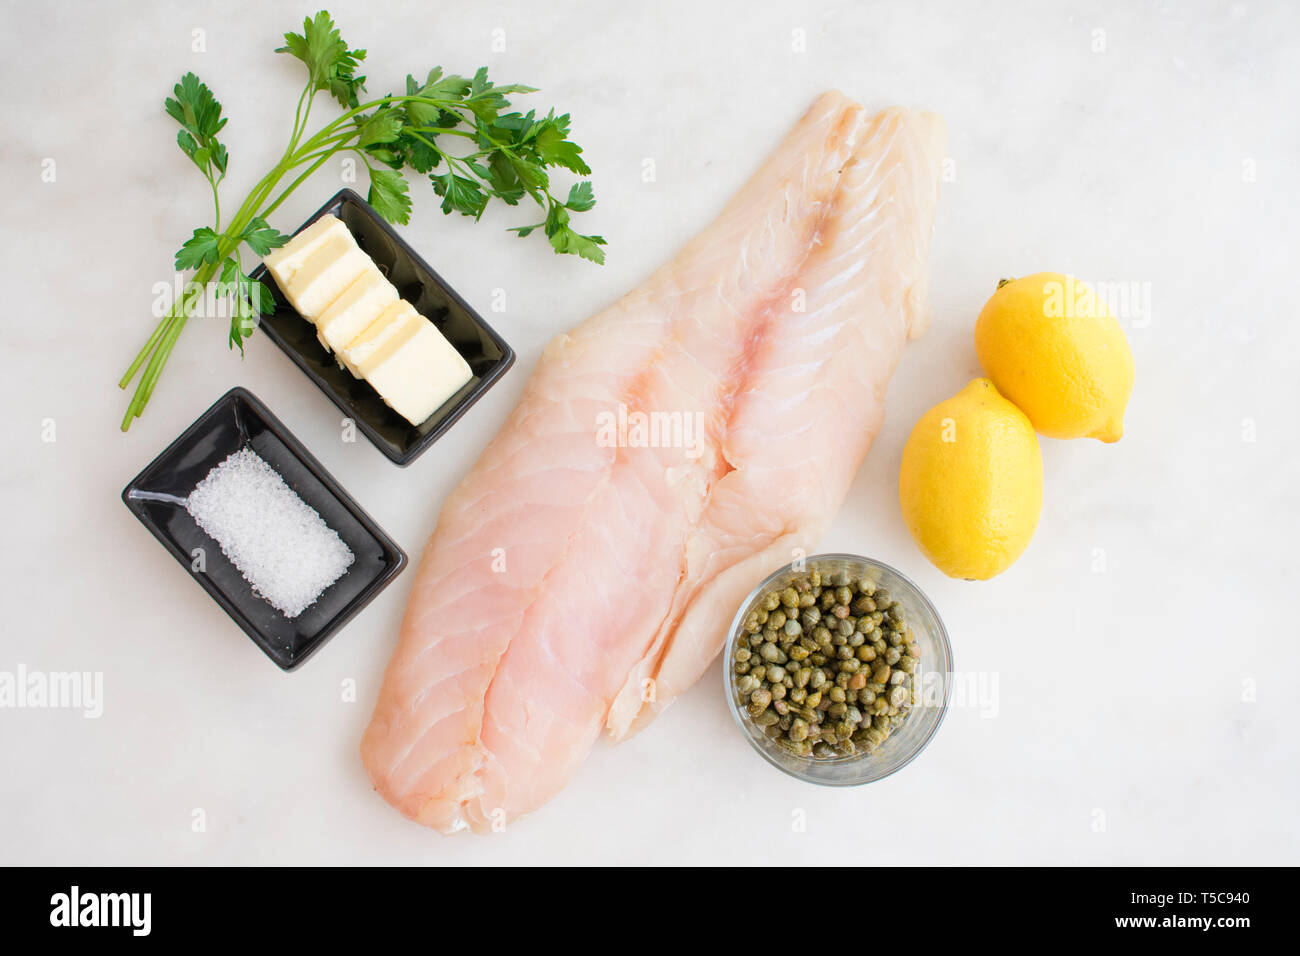 Zutaten: Großes, knochenloses Felchenfischfilet mit Kapern, Zitronen, Butter, Salz und Petersilie auf einem weißen Marmortisch Stockfoto